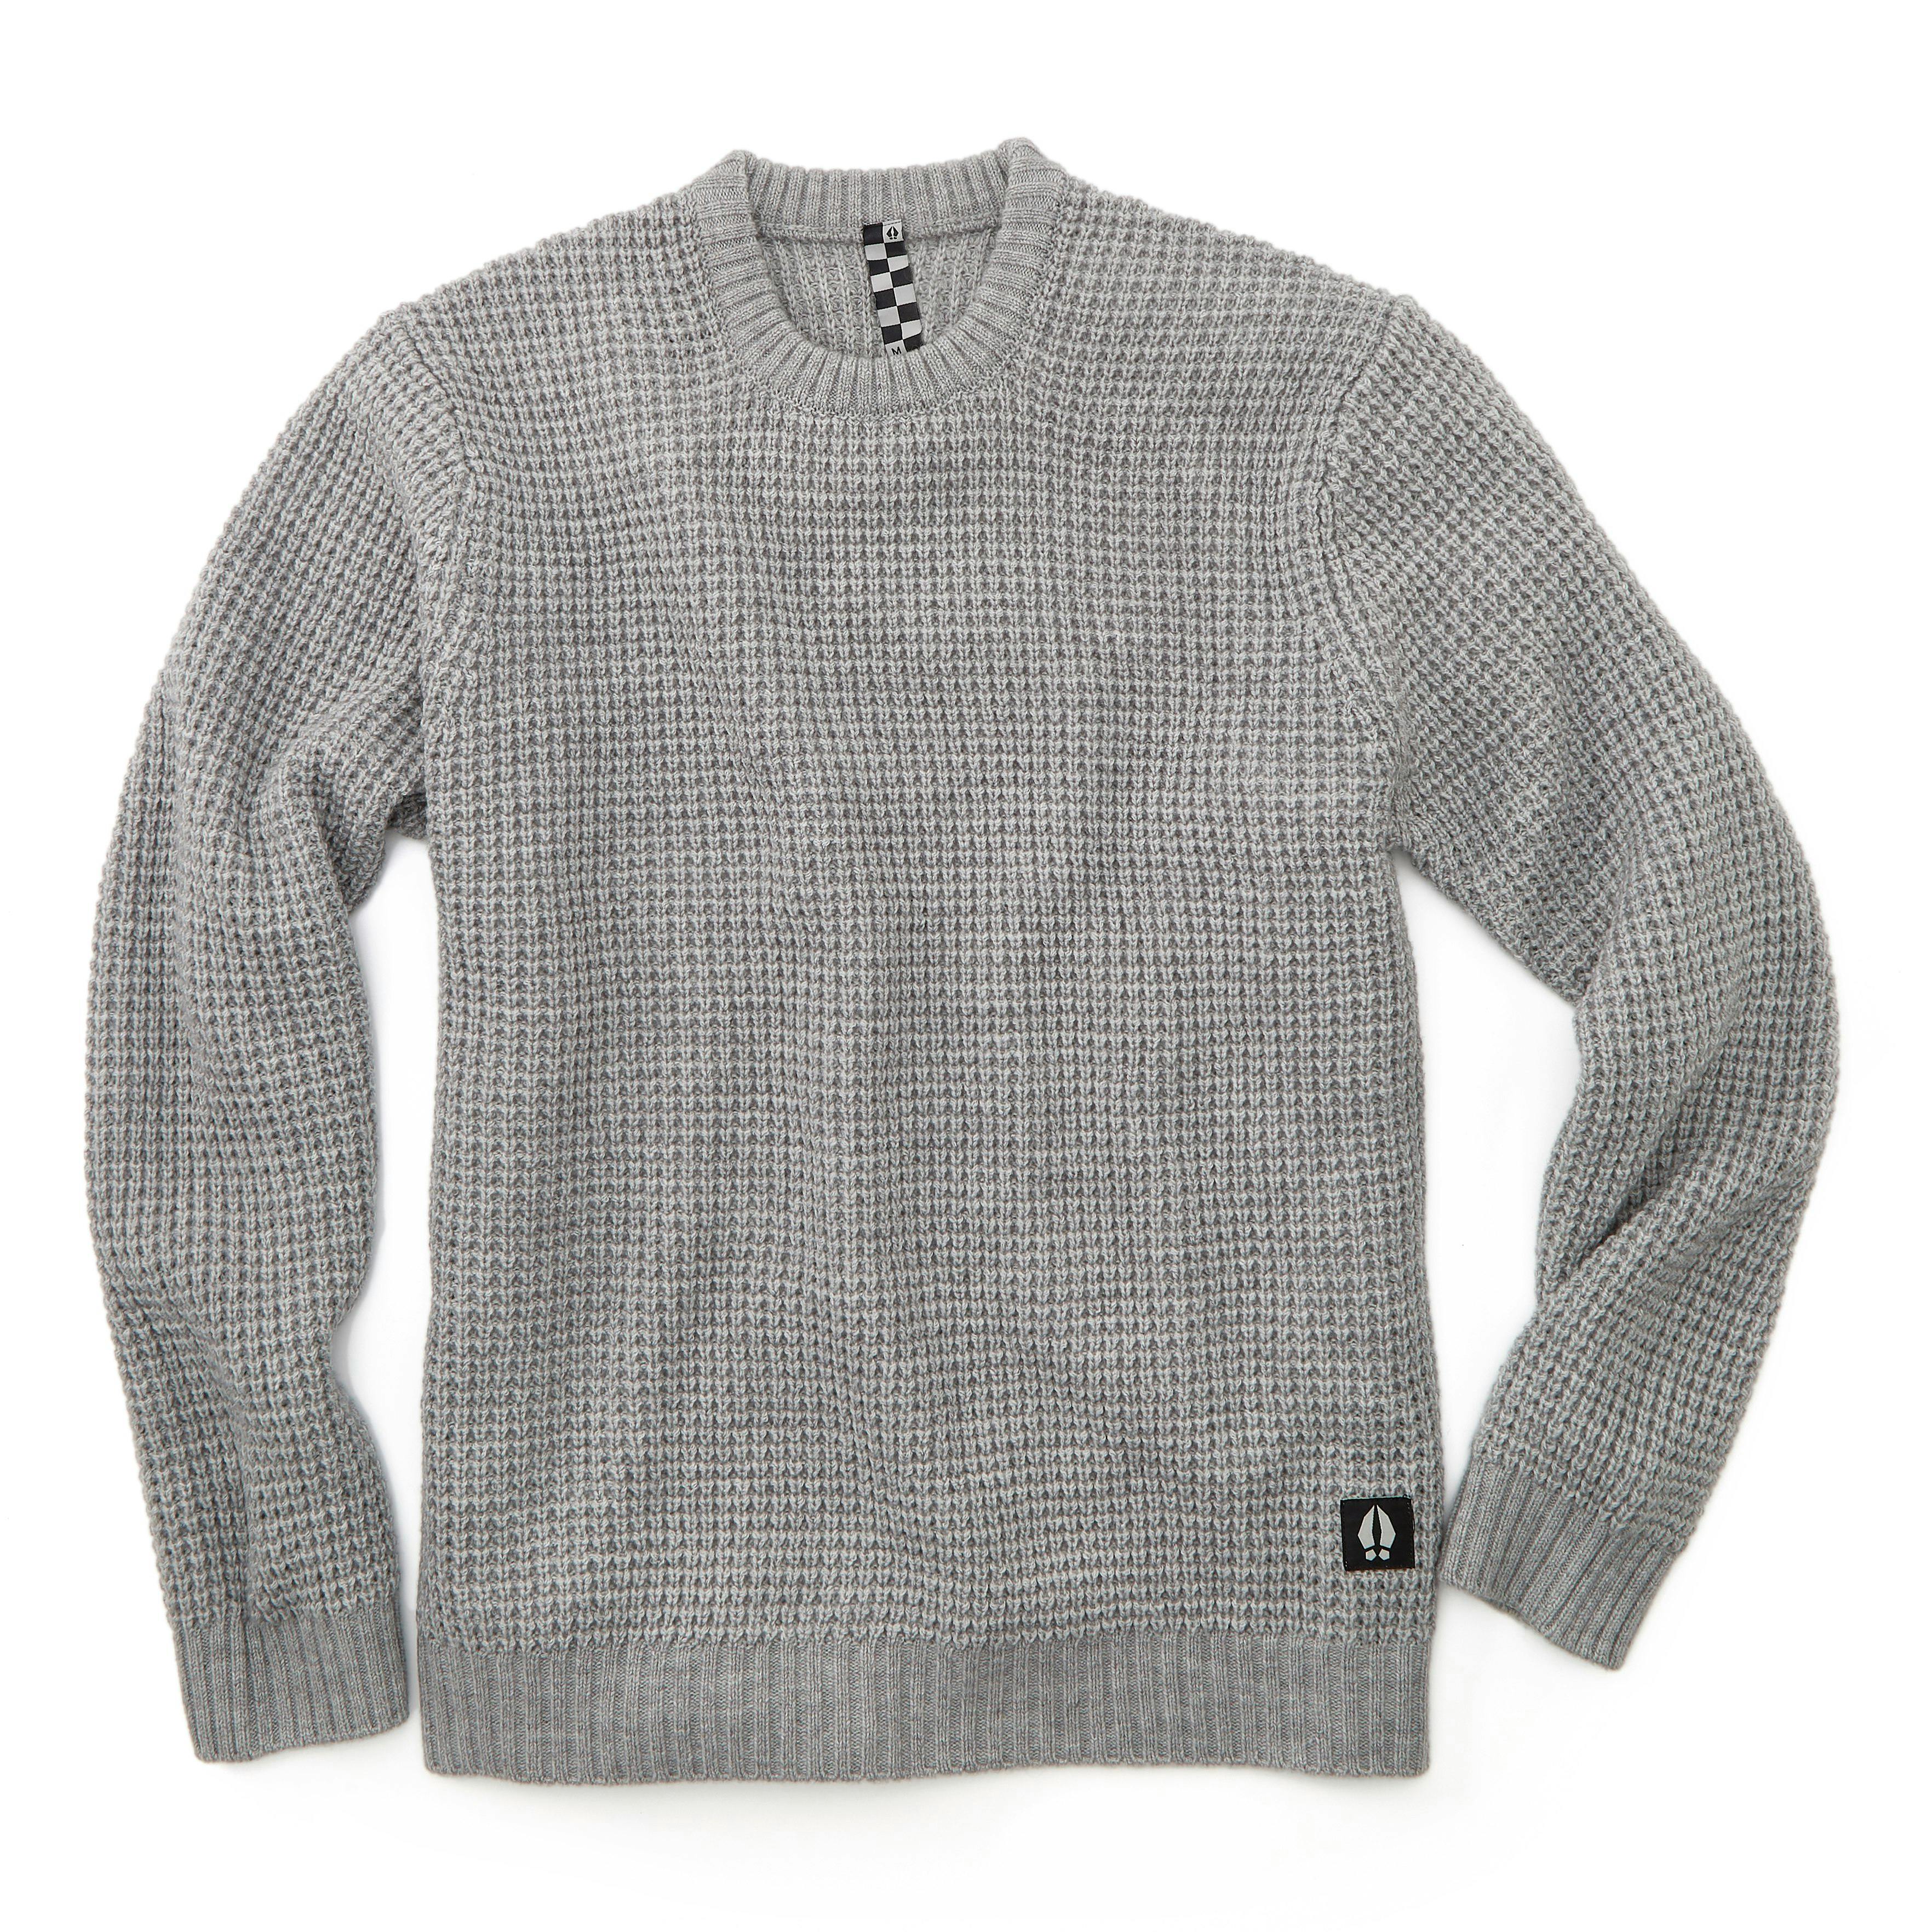 Odis Boatyard Sweater